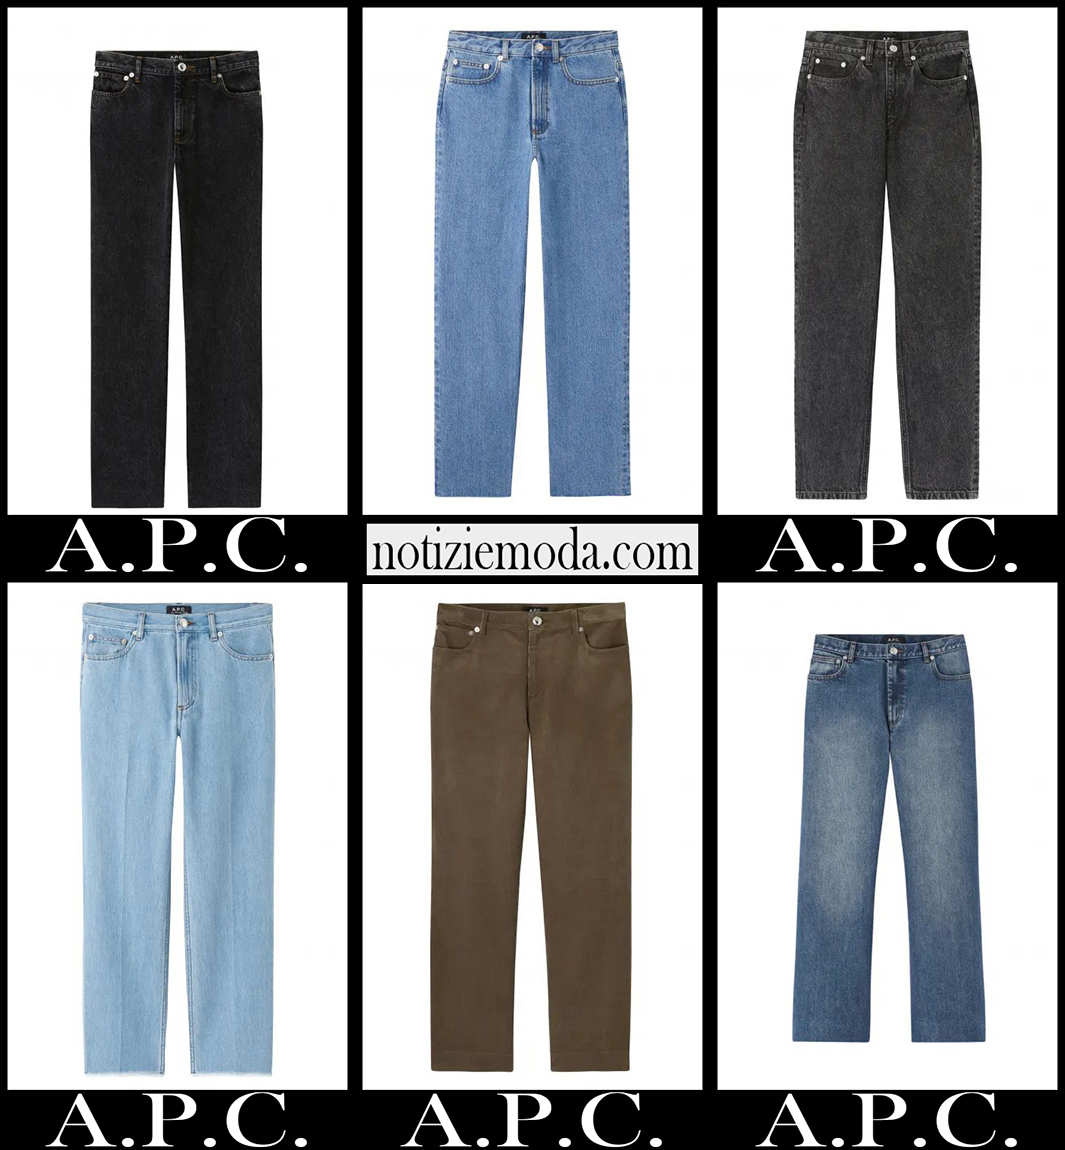 Nuovi arrivi jeans A.P.C. 2021 abbigliamento denim donna